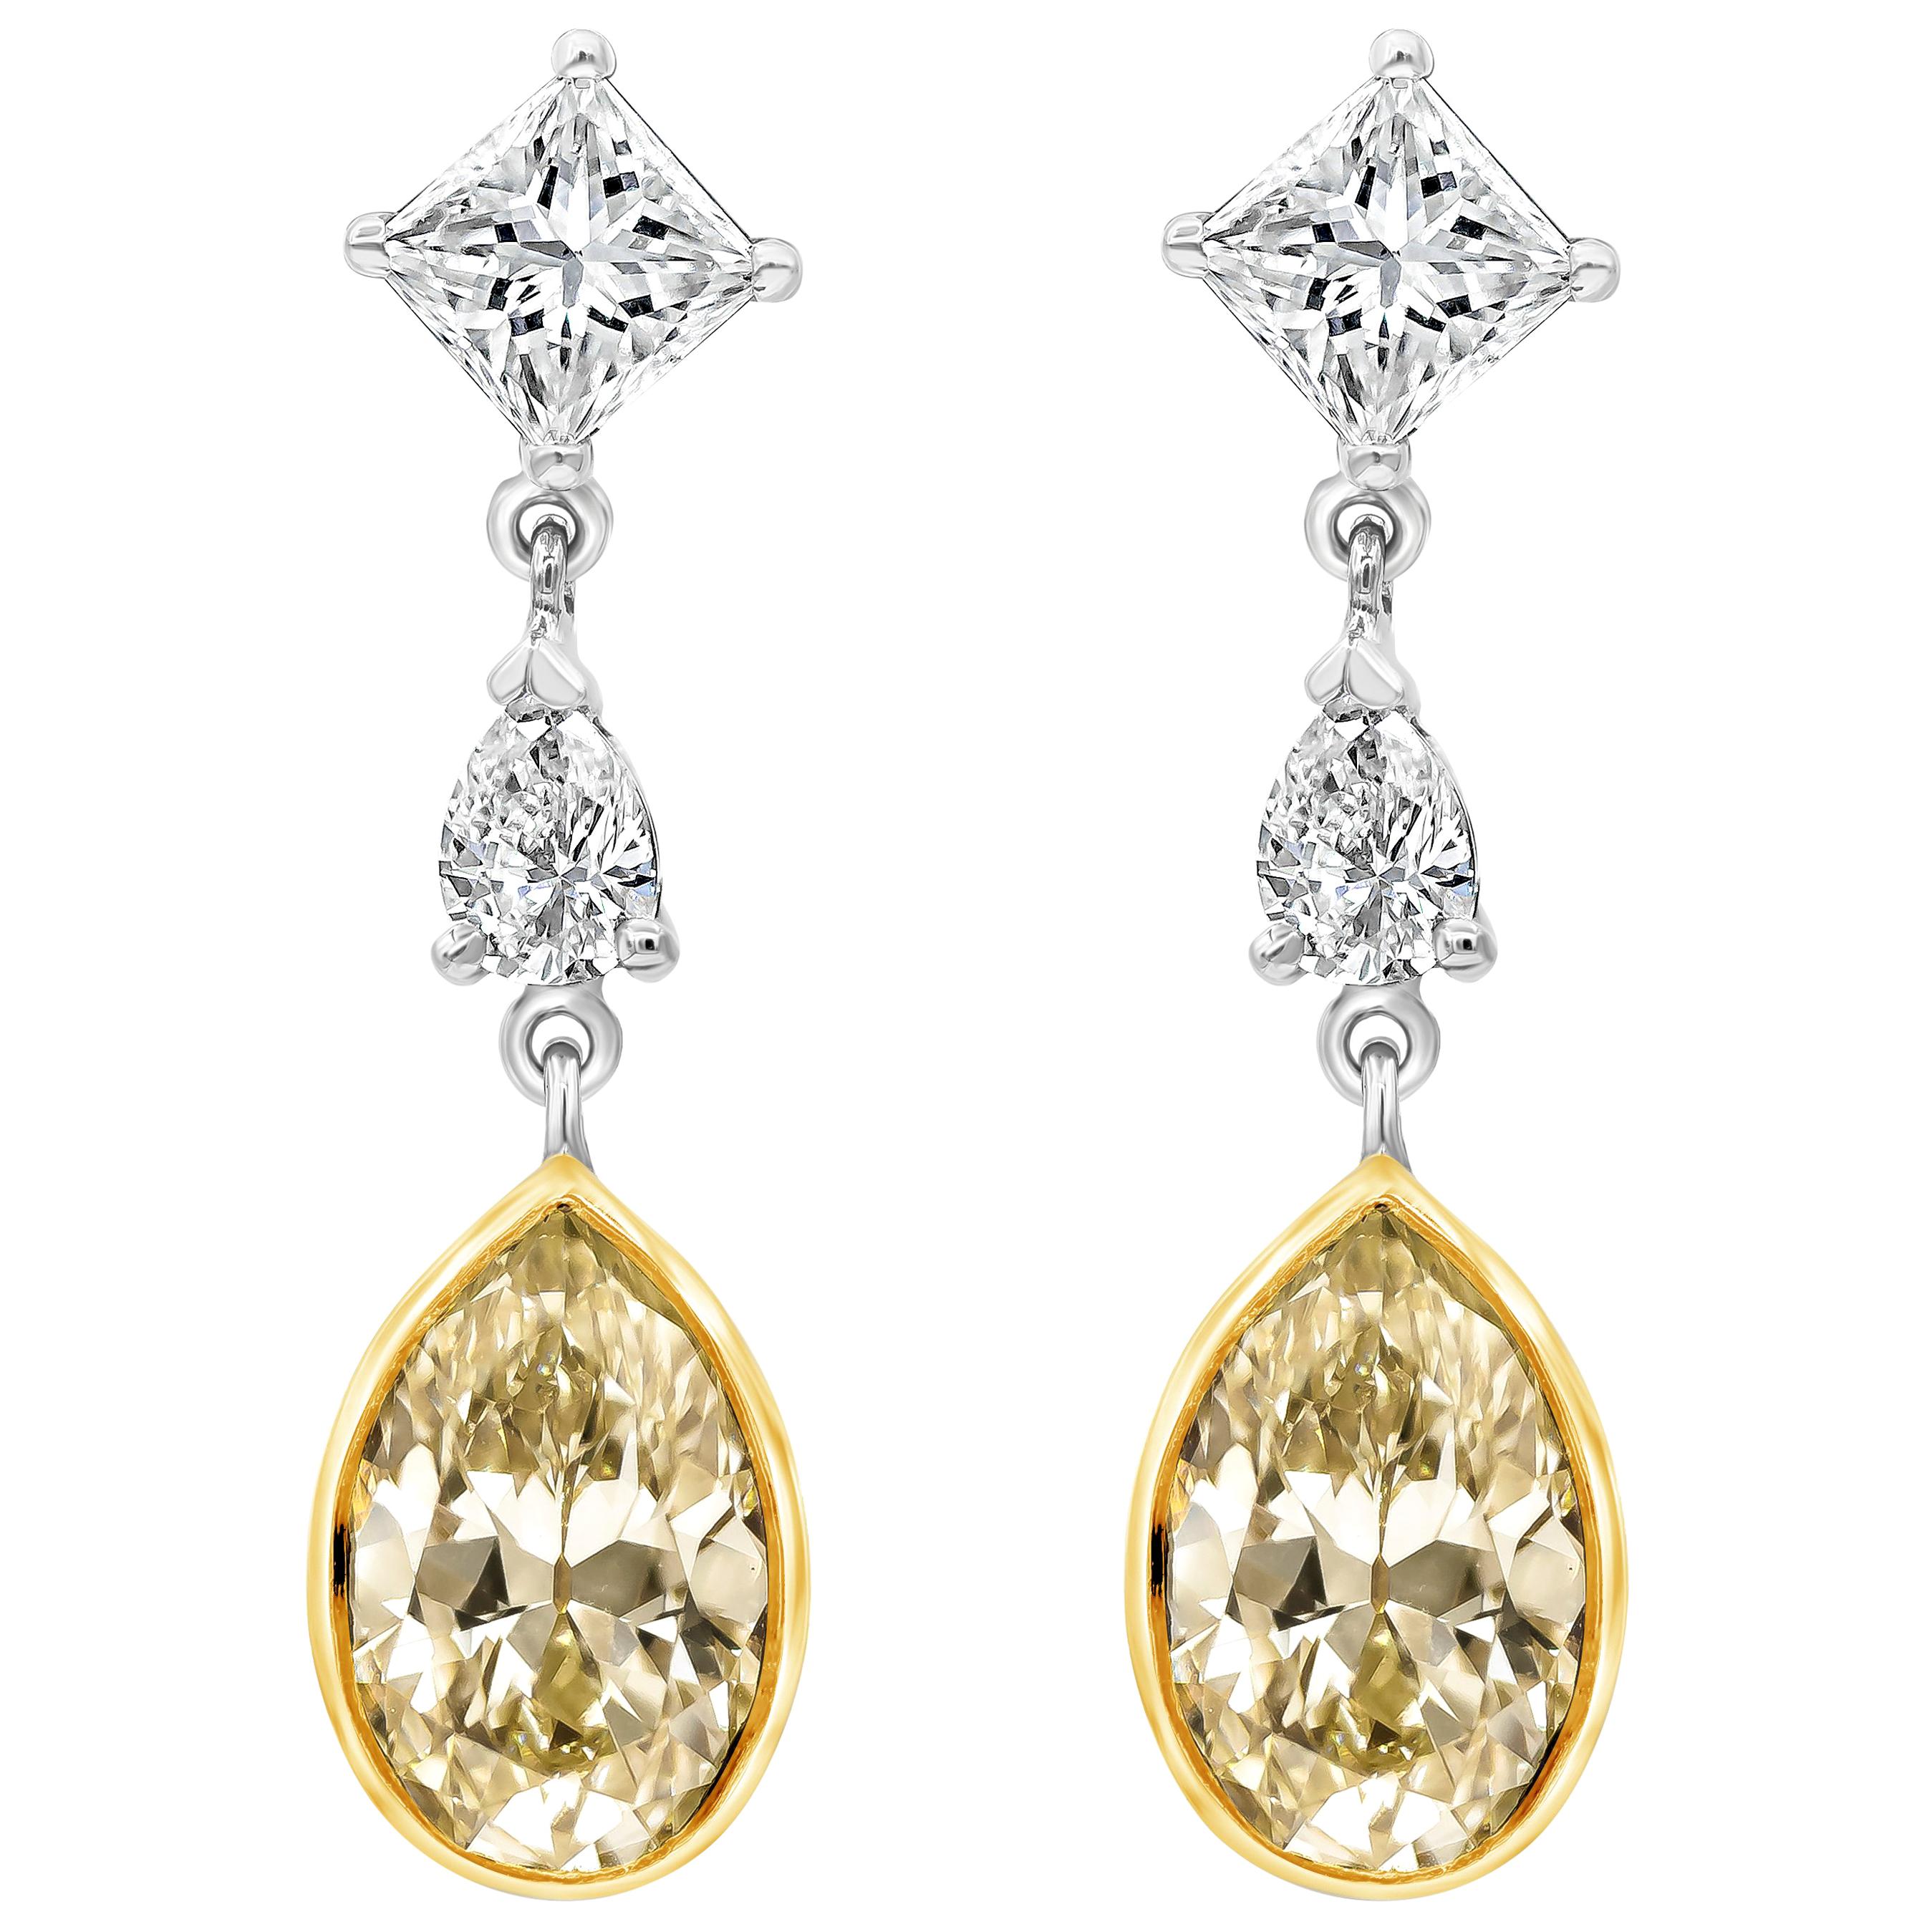 Roman Malakov Pendants d'oreilles en forme de poire avec diamants jaunes de 2,46 carats au total